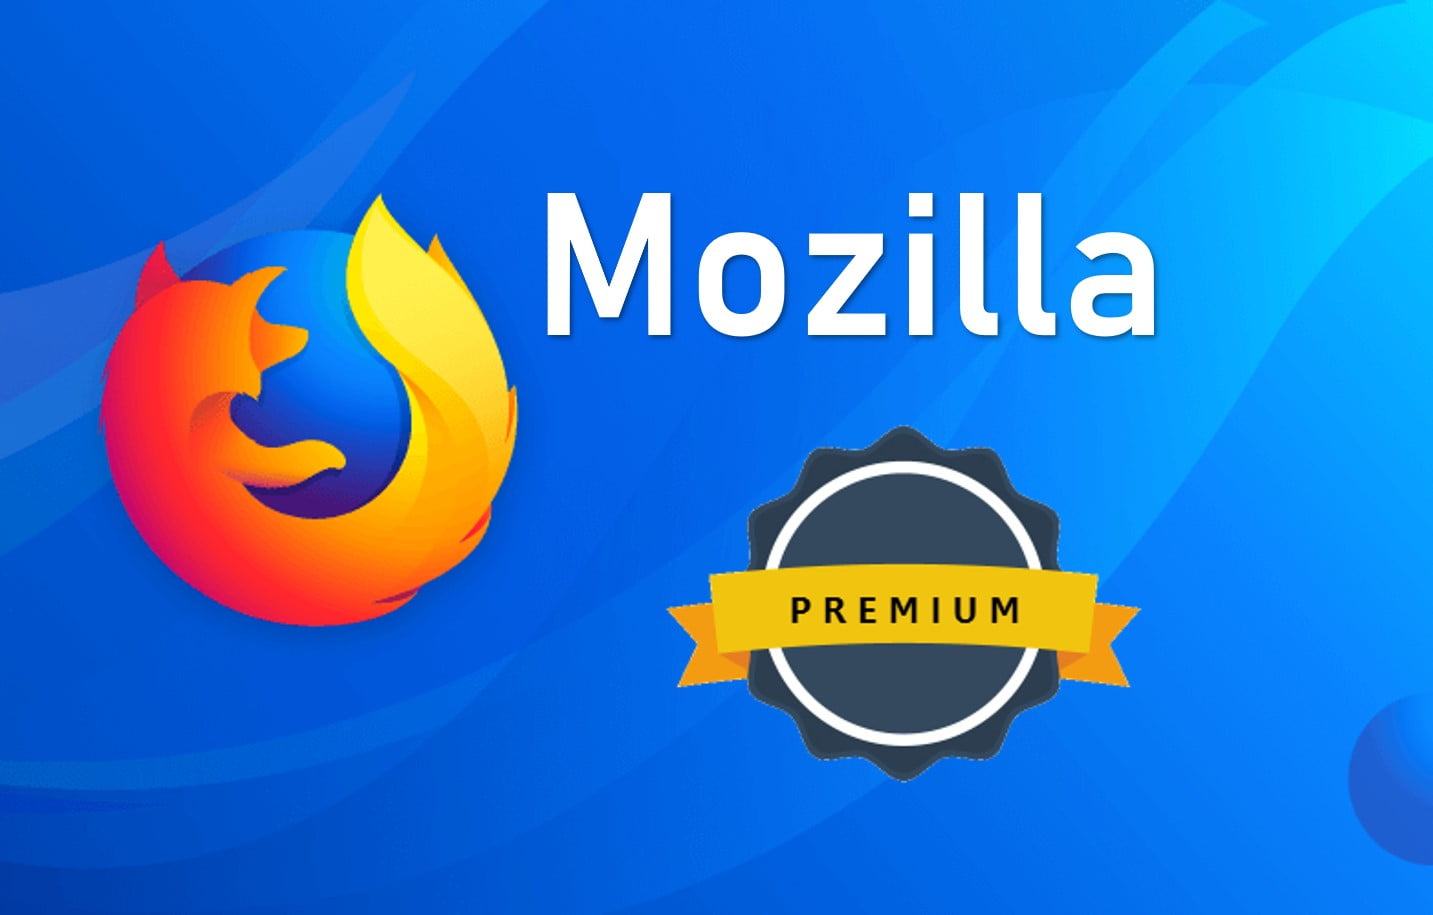 Mozilla Firefox Premium Version To Release